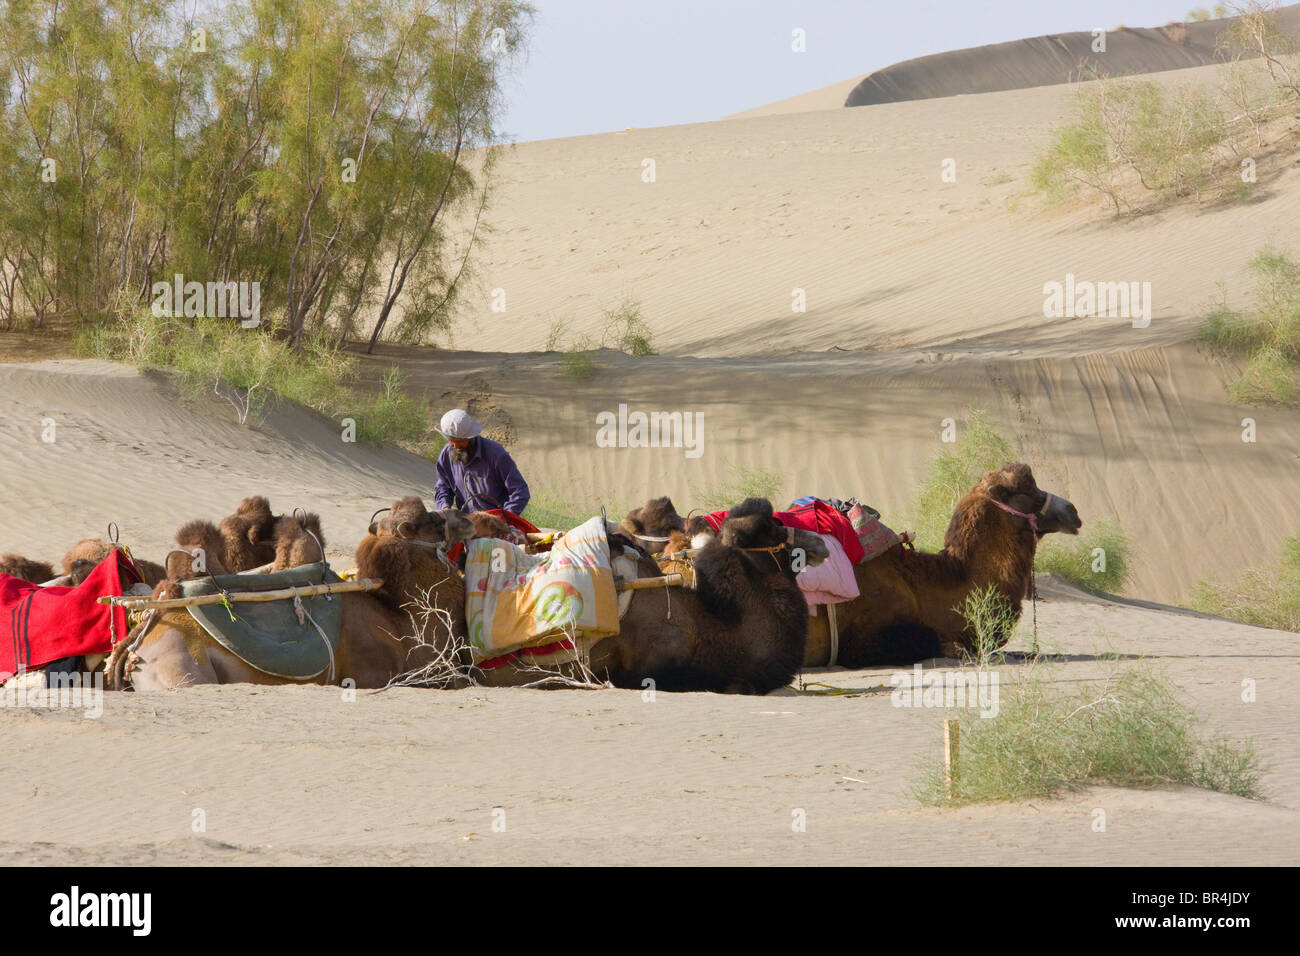 Tourist camel caravan in the desert, Aksu, Xinjiang, China Stock Photo